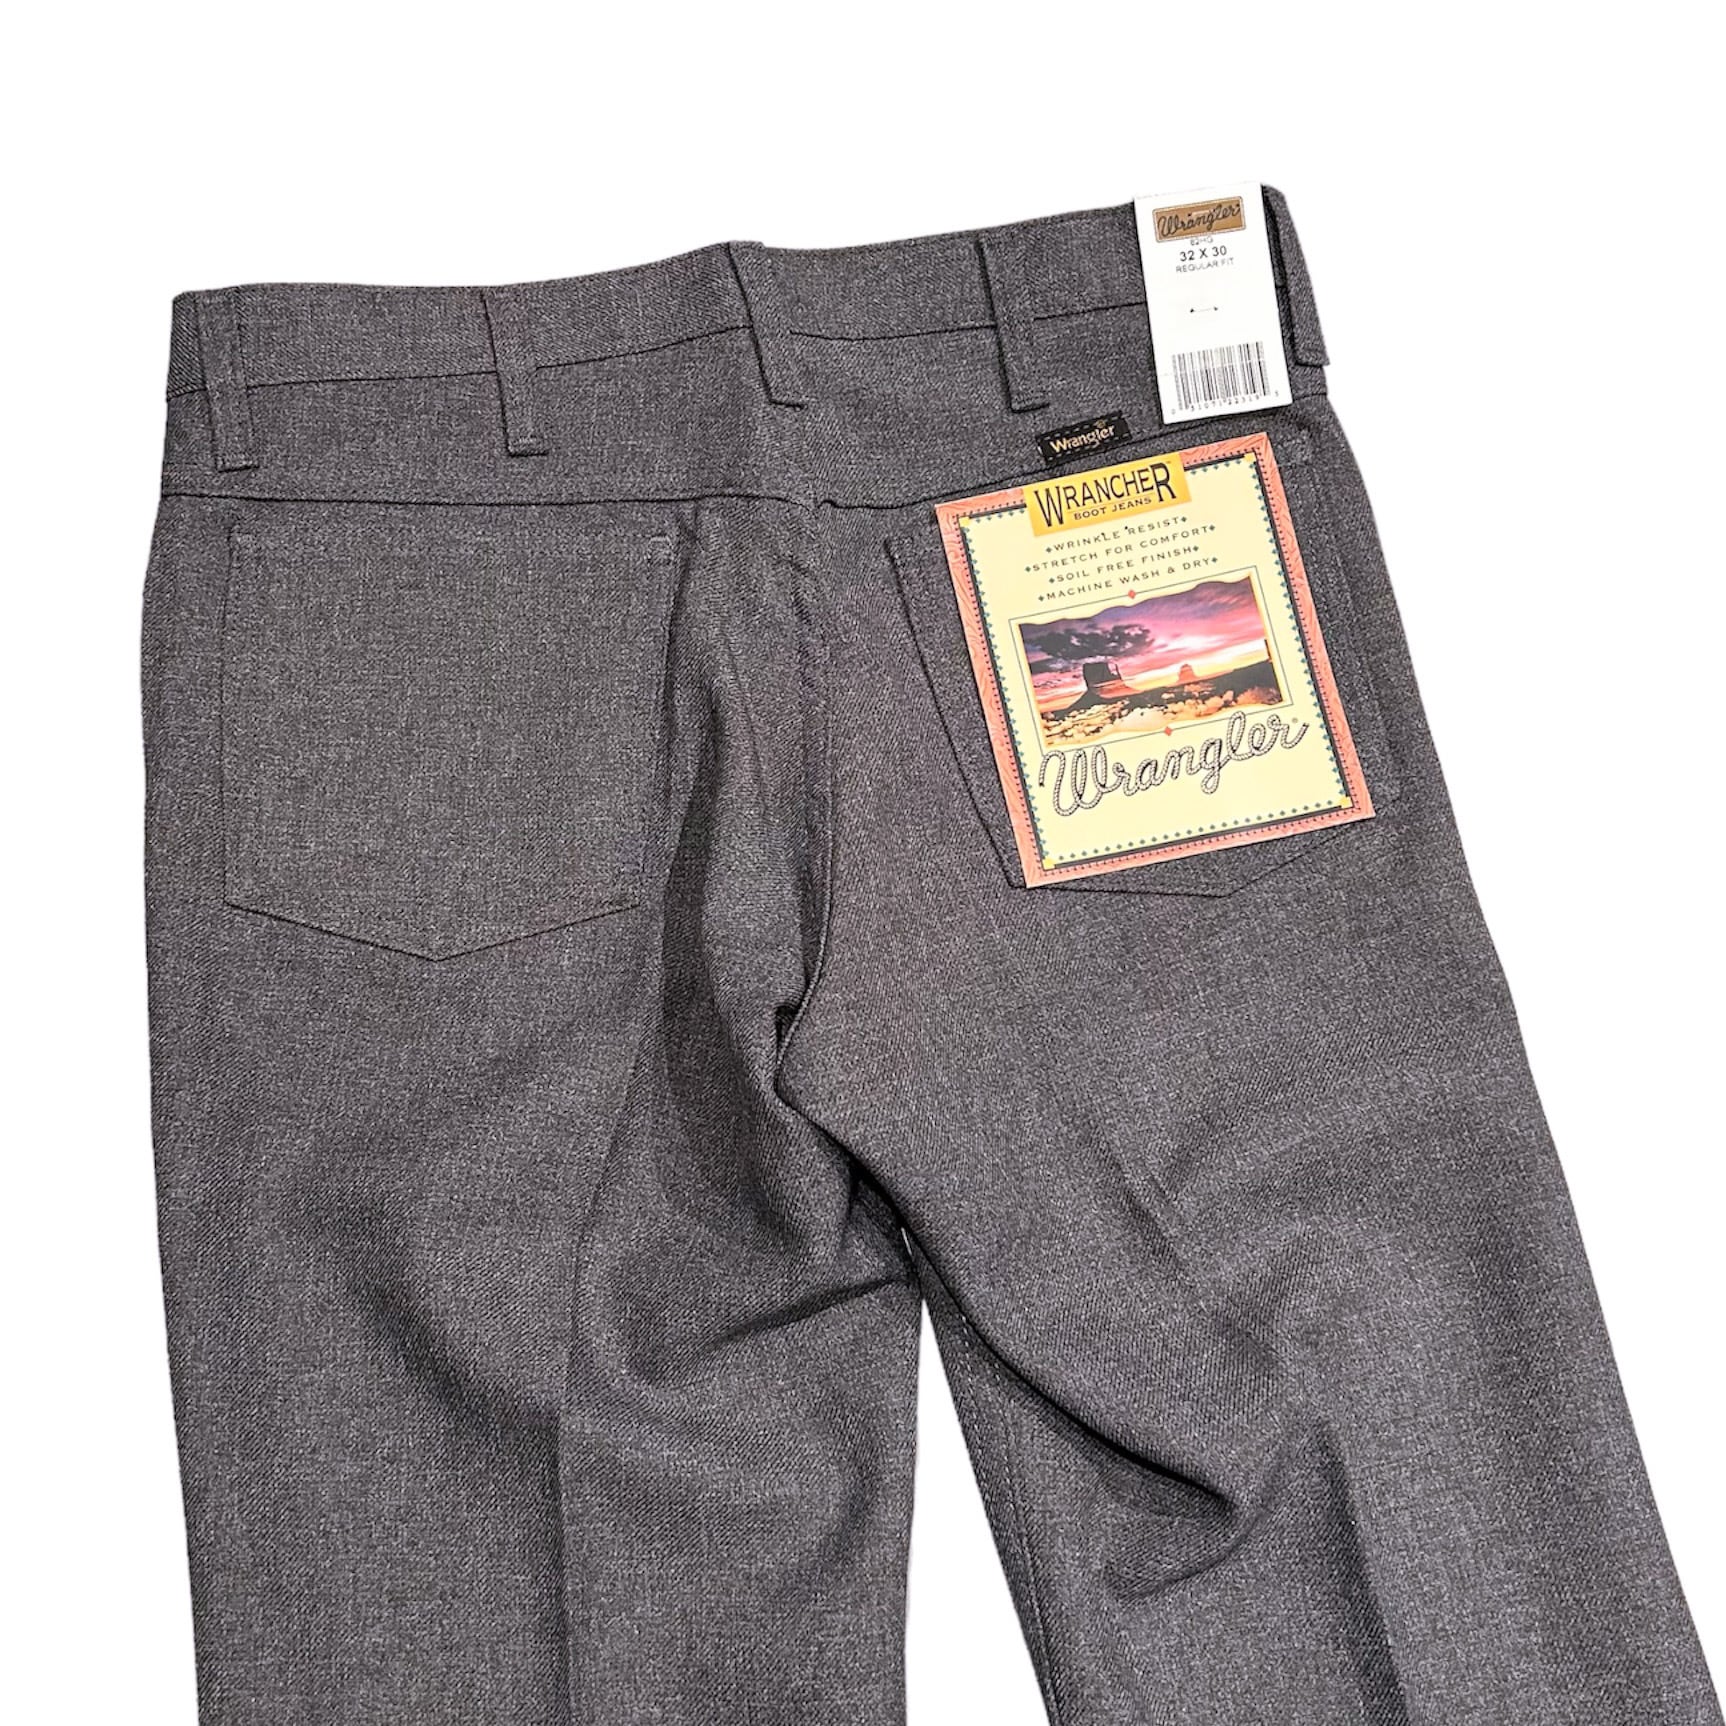 USA企画 Wrangler WRANCHER DRESS JEANS /ラングラー ランチャー ドレスジーンズ ブーツカット パンツ